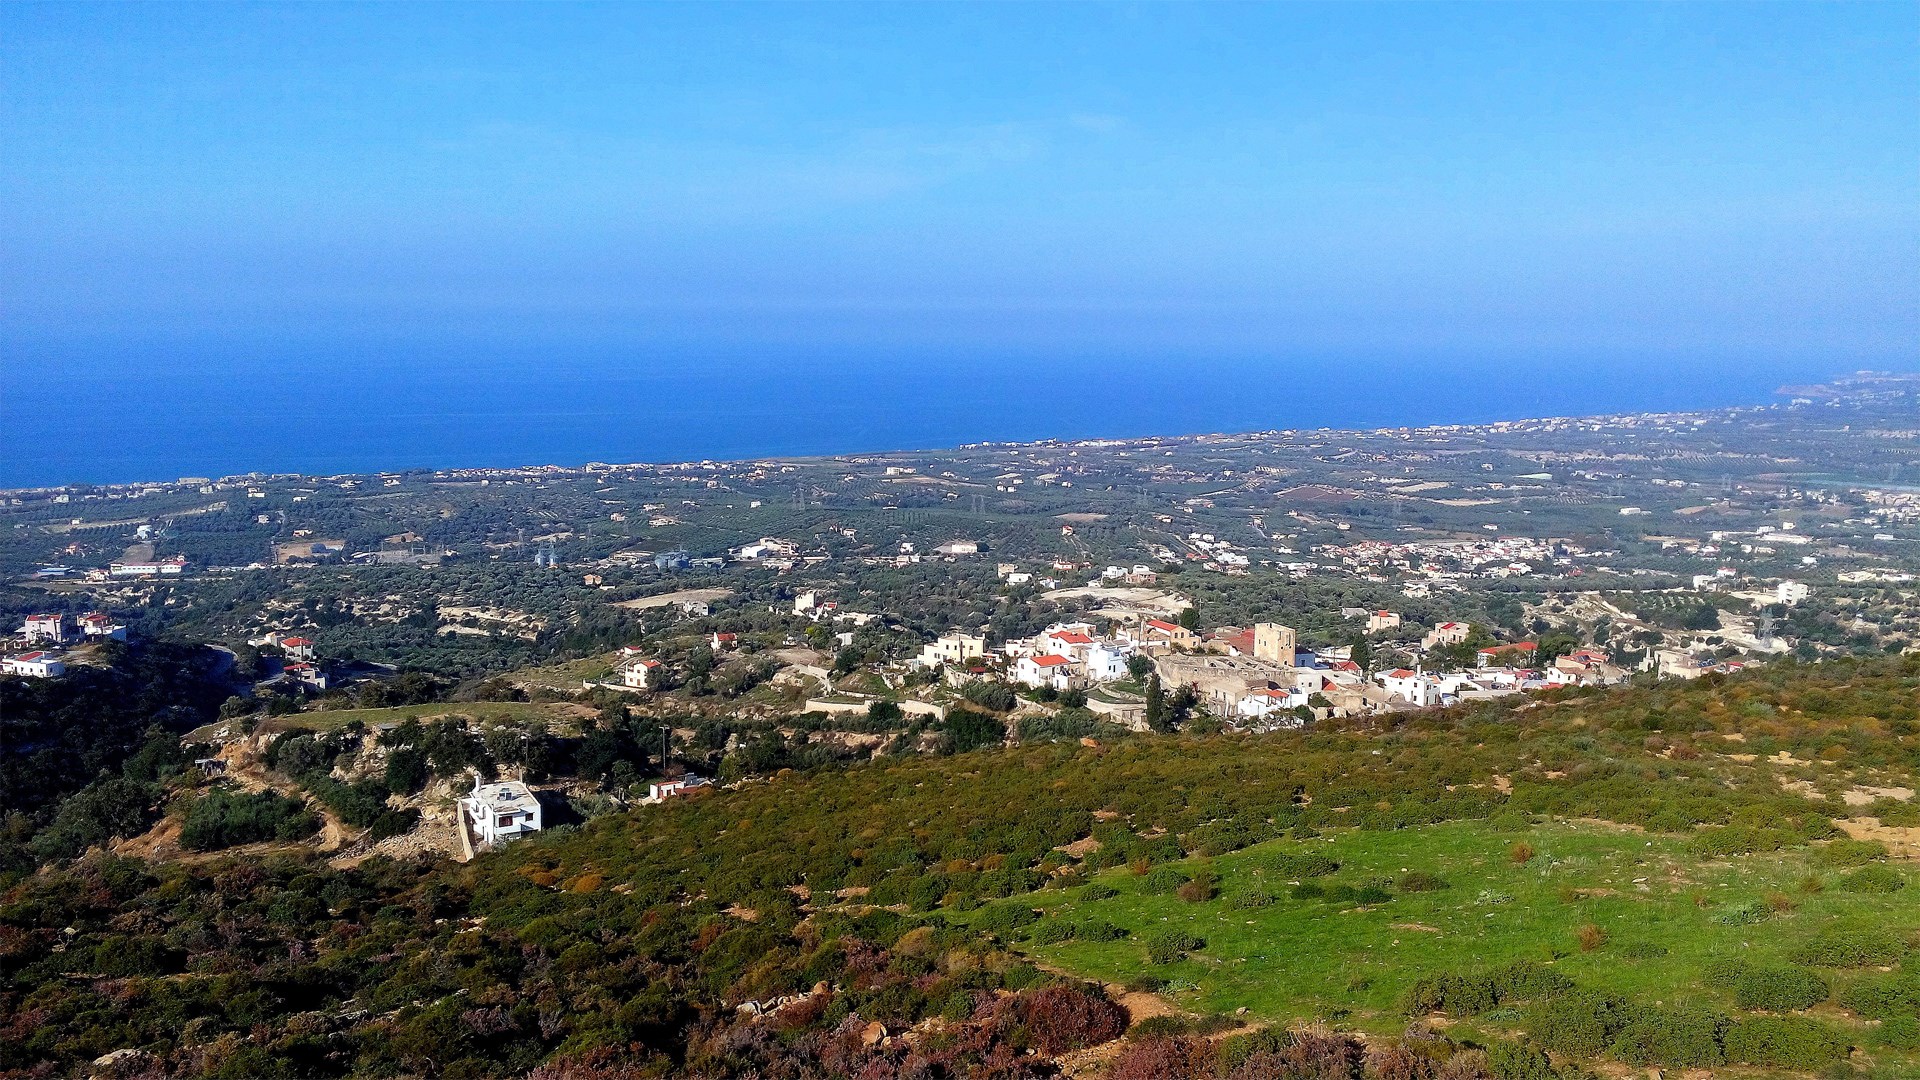 Maroulas Village, Rethymno - Crete | 18 Oct 2015  | Alargo